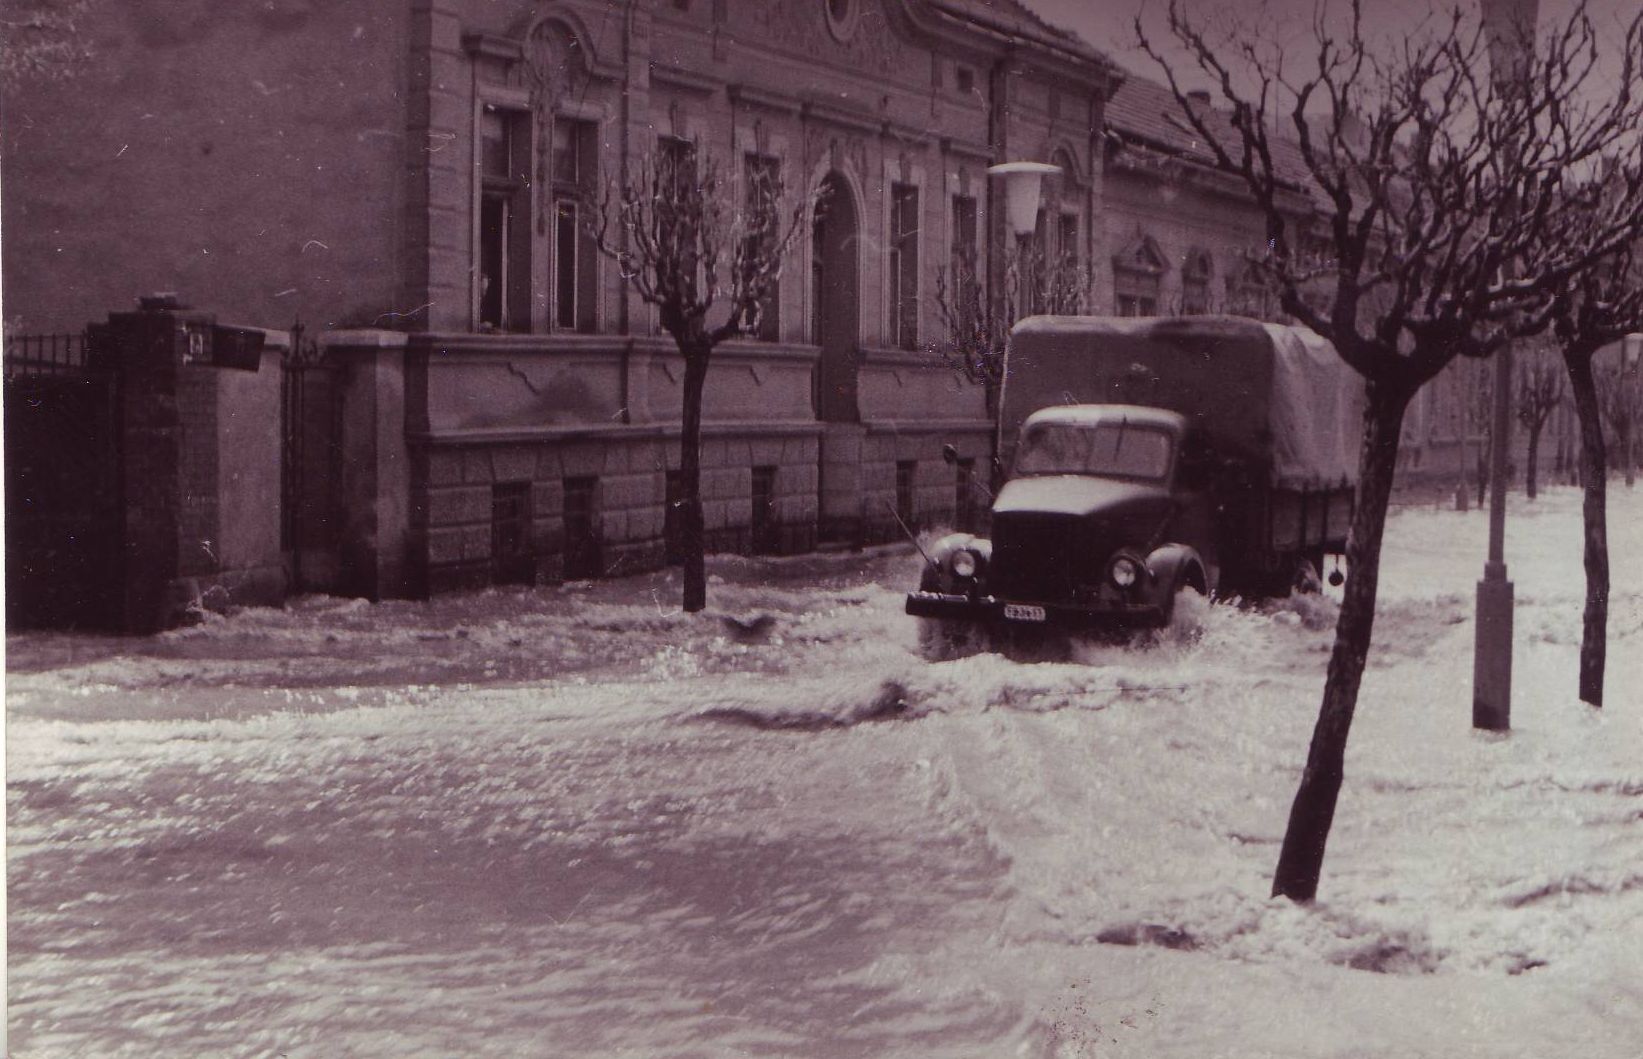 Ez itt a házunk a Wesselényi utcában, ami akkor még nem volt a házunk. A fotó hátulján levő évszám szerint a dátum 1965. április 23.